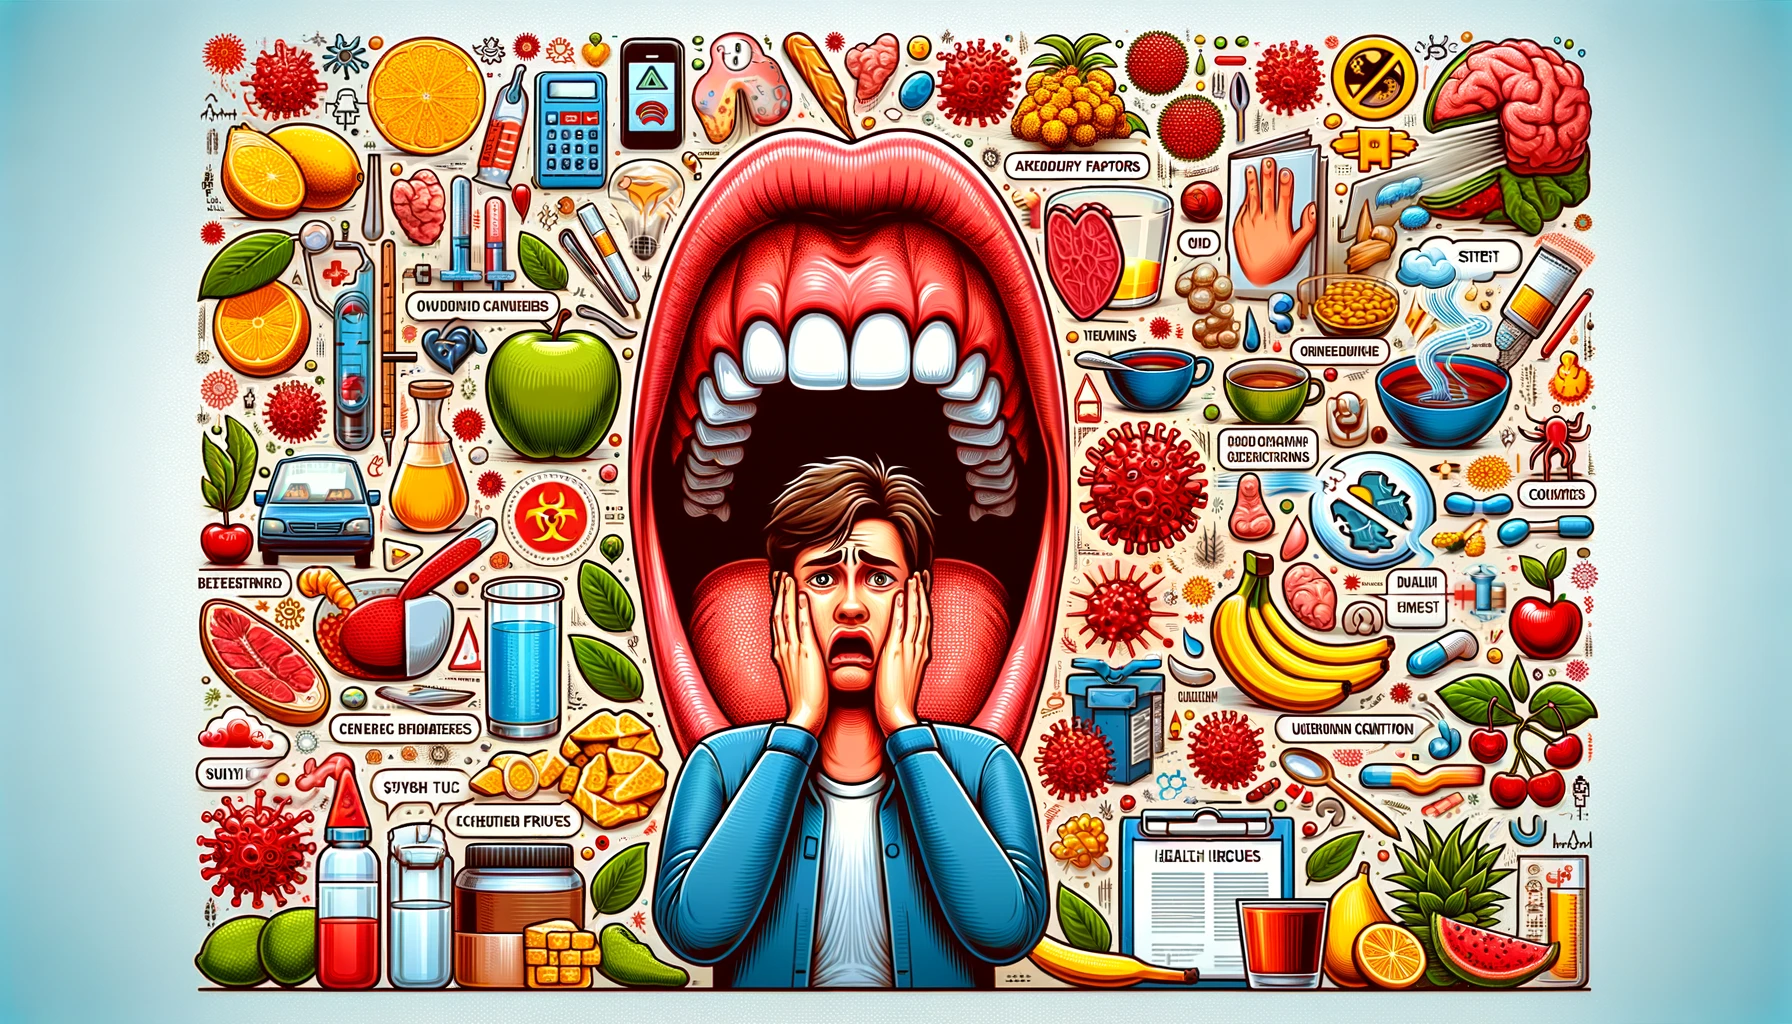 Bred illustrasjon som viser ulike årsaker til blemmer i munnhulen, inkludert stress og kosthold